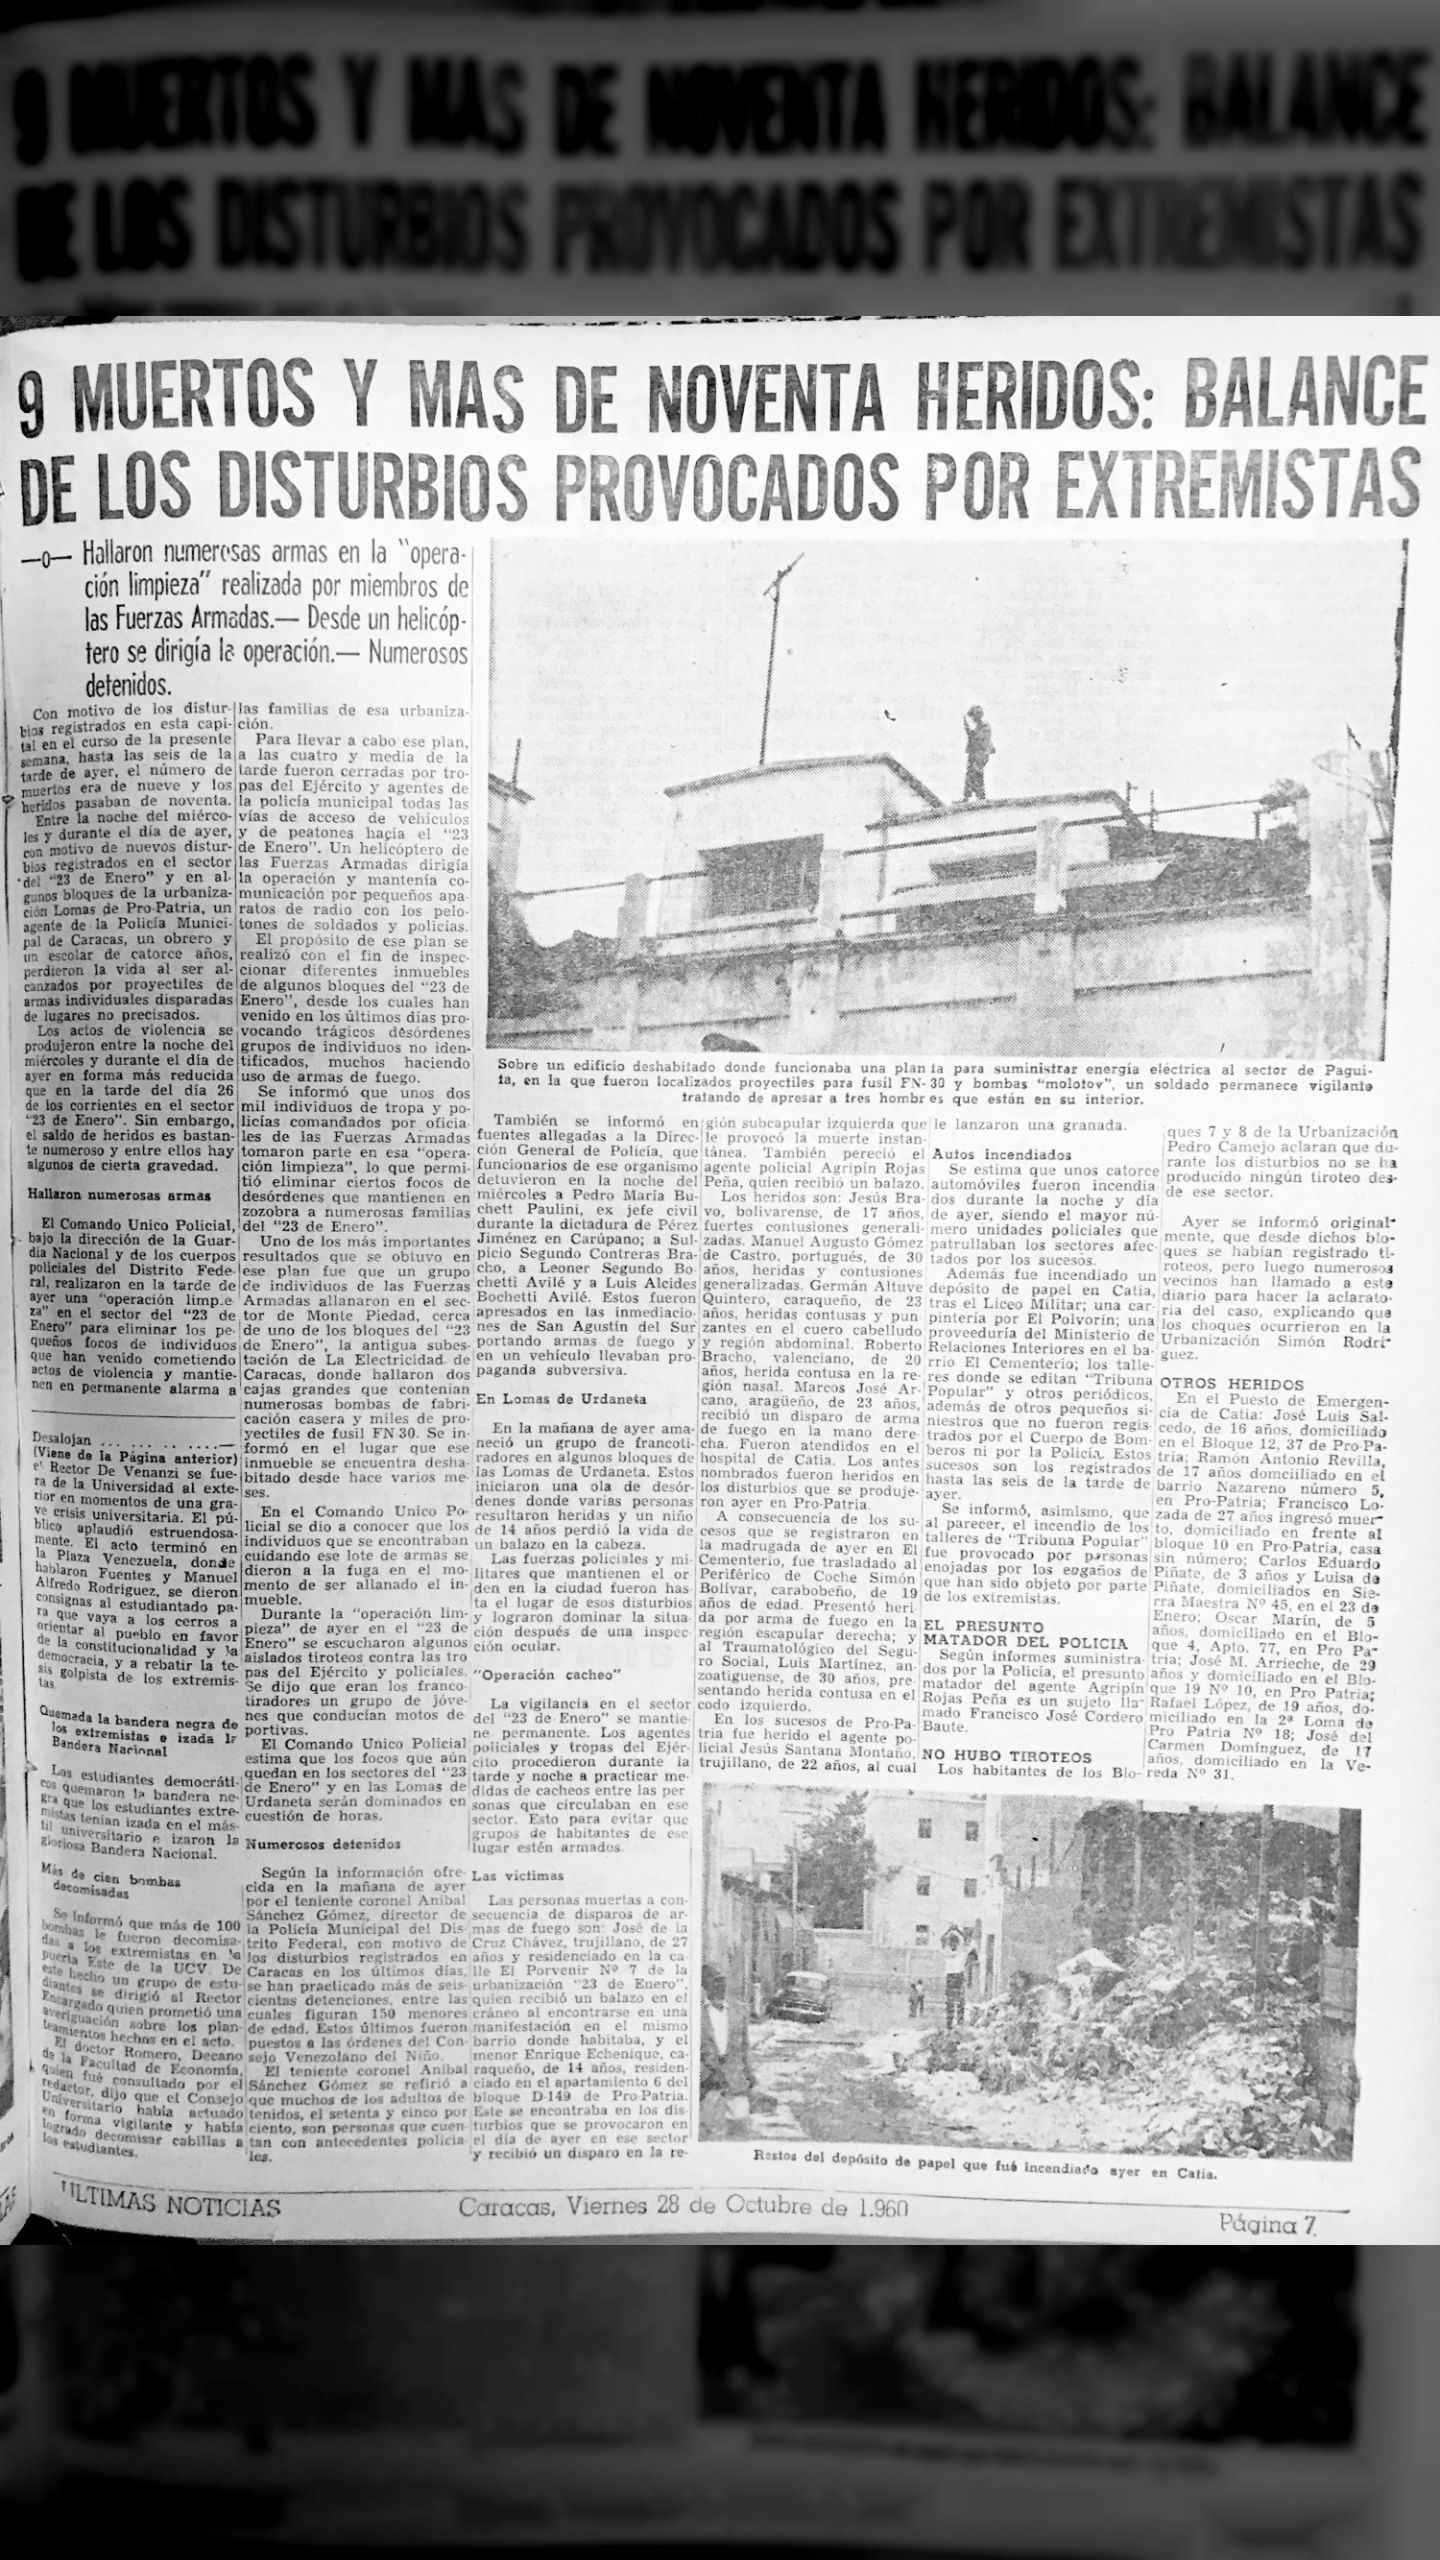 9 muertos y más de noventa heridos: "Operación Limpieza" (Últimas Noticias, 28 octubre 1960)